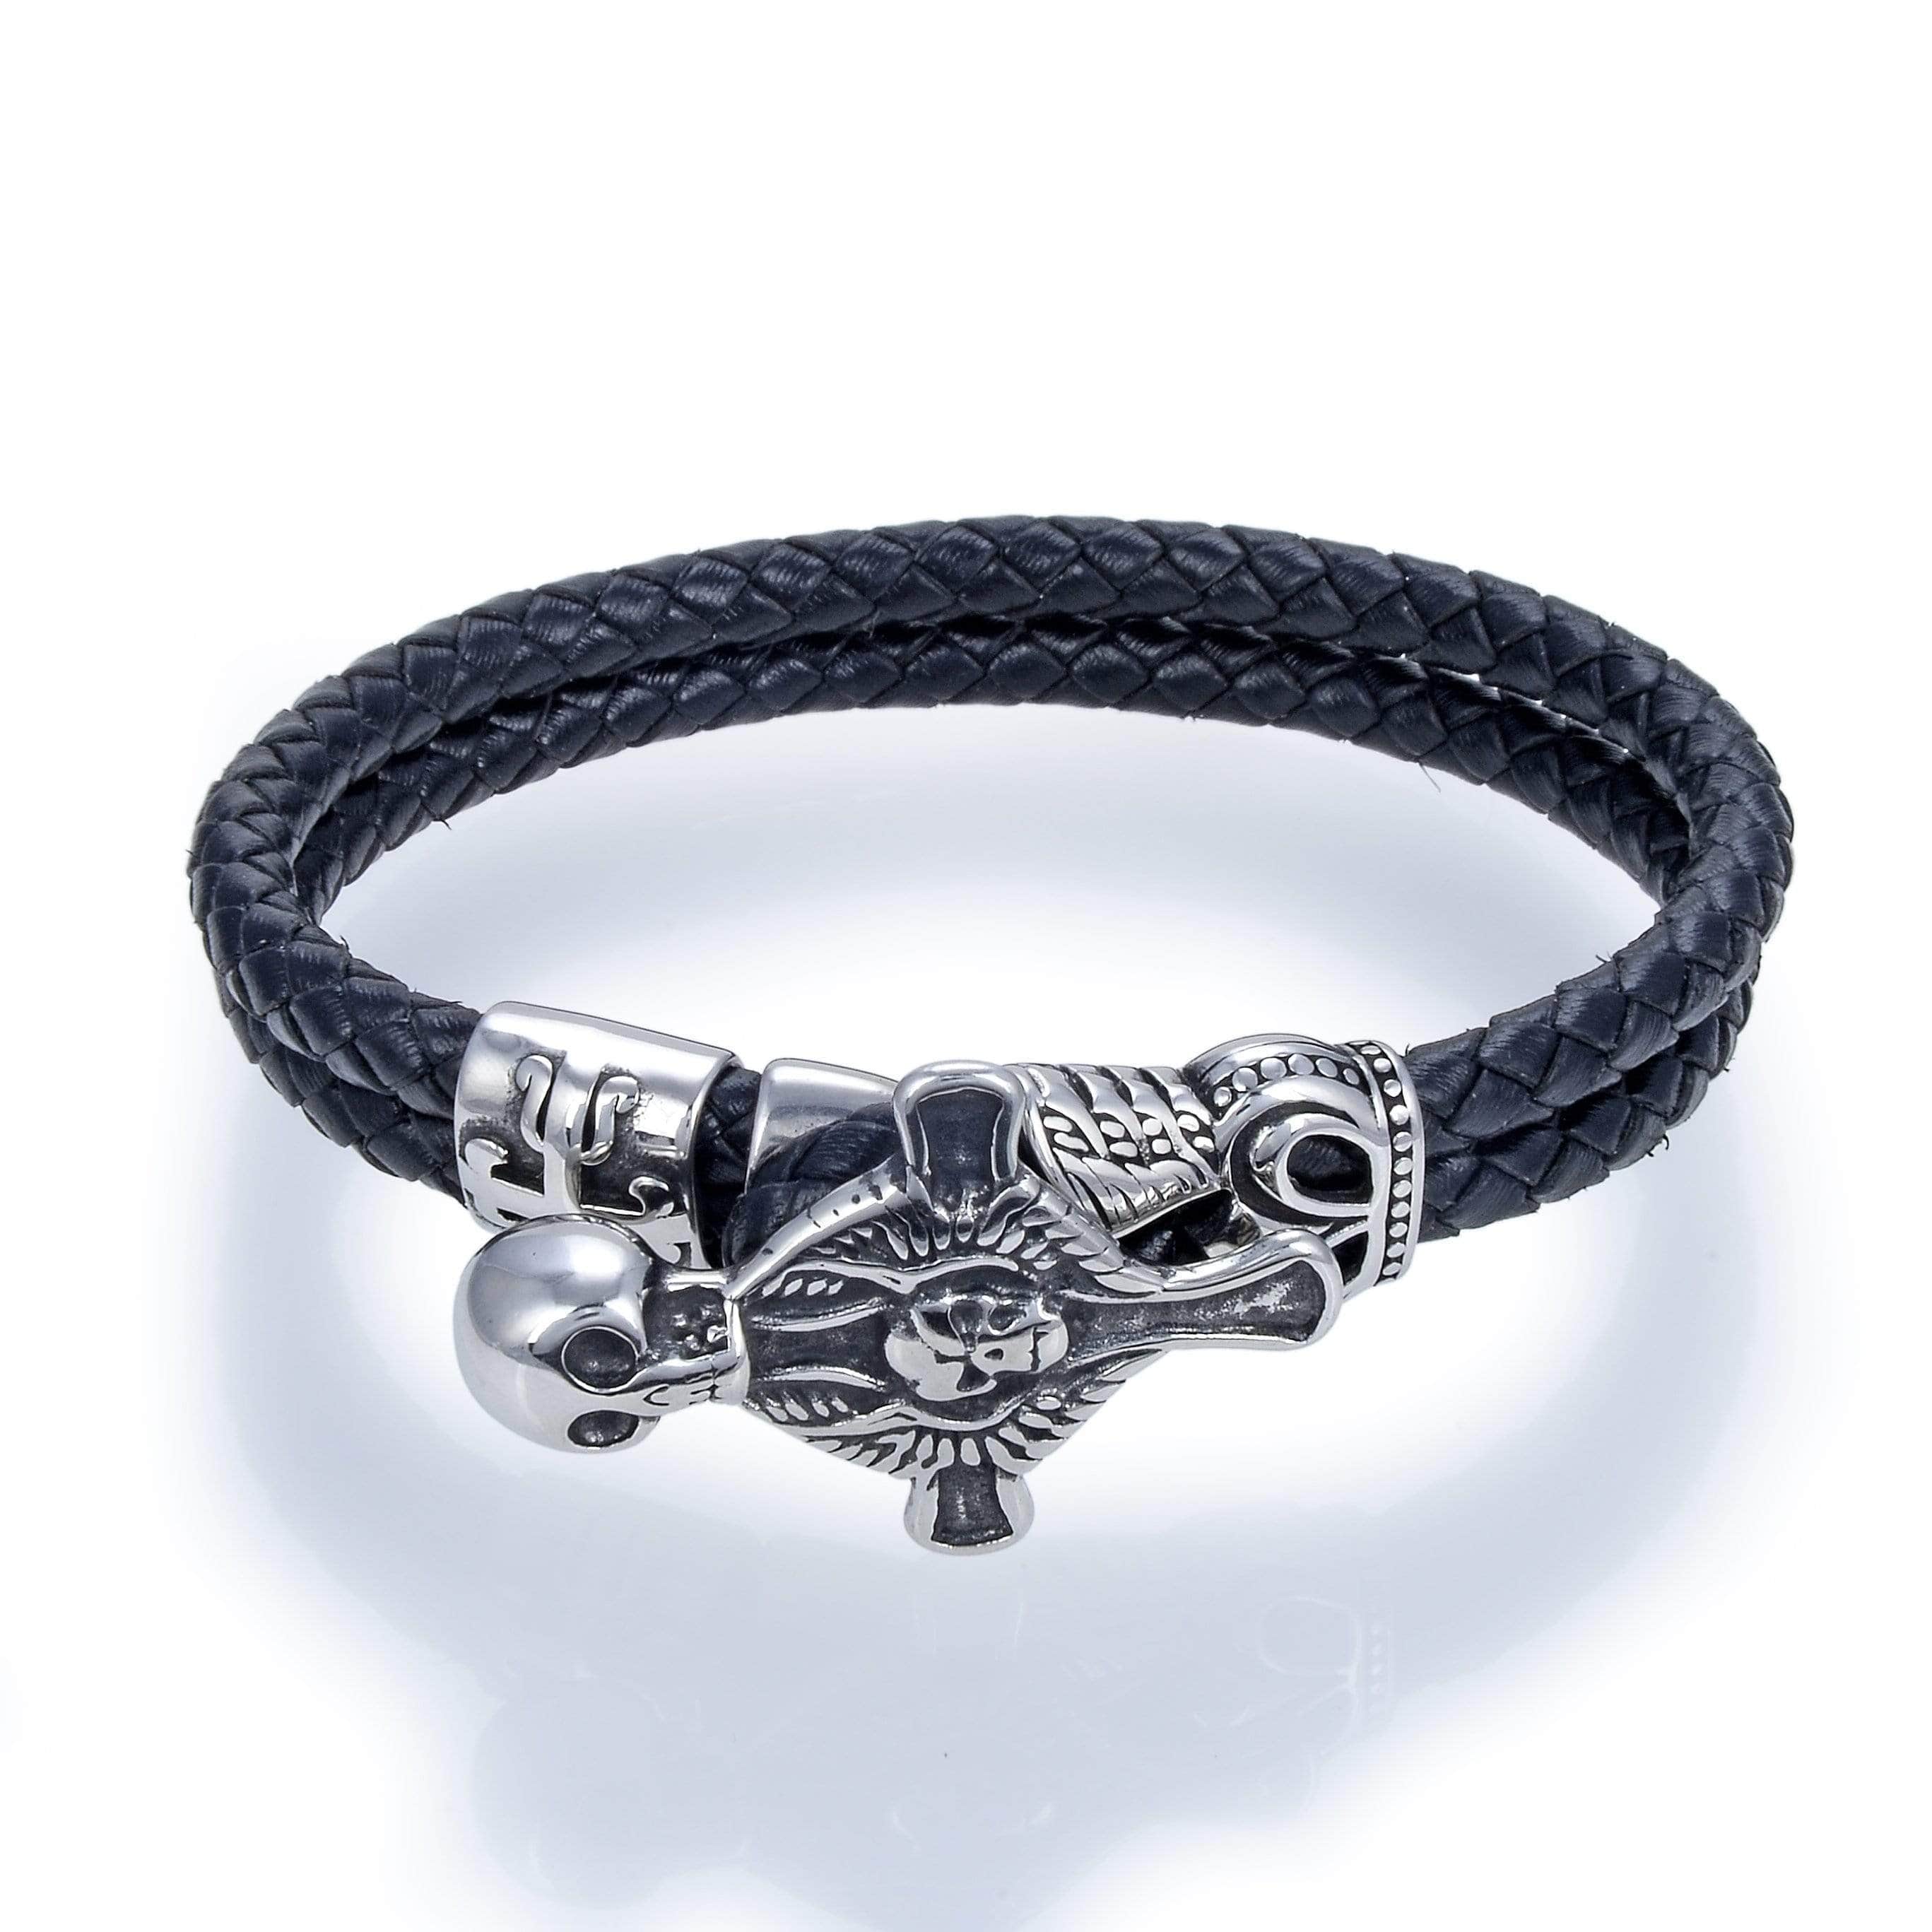 Kalifano Steel Hearts Jewelry Steel Hearts Skull Celtic Cross Black Leather Bracelet SHB200-118